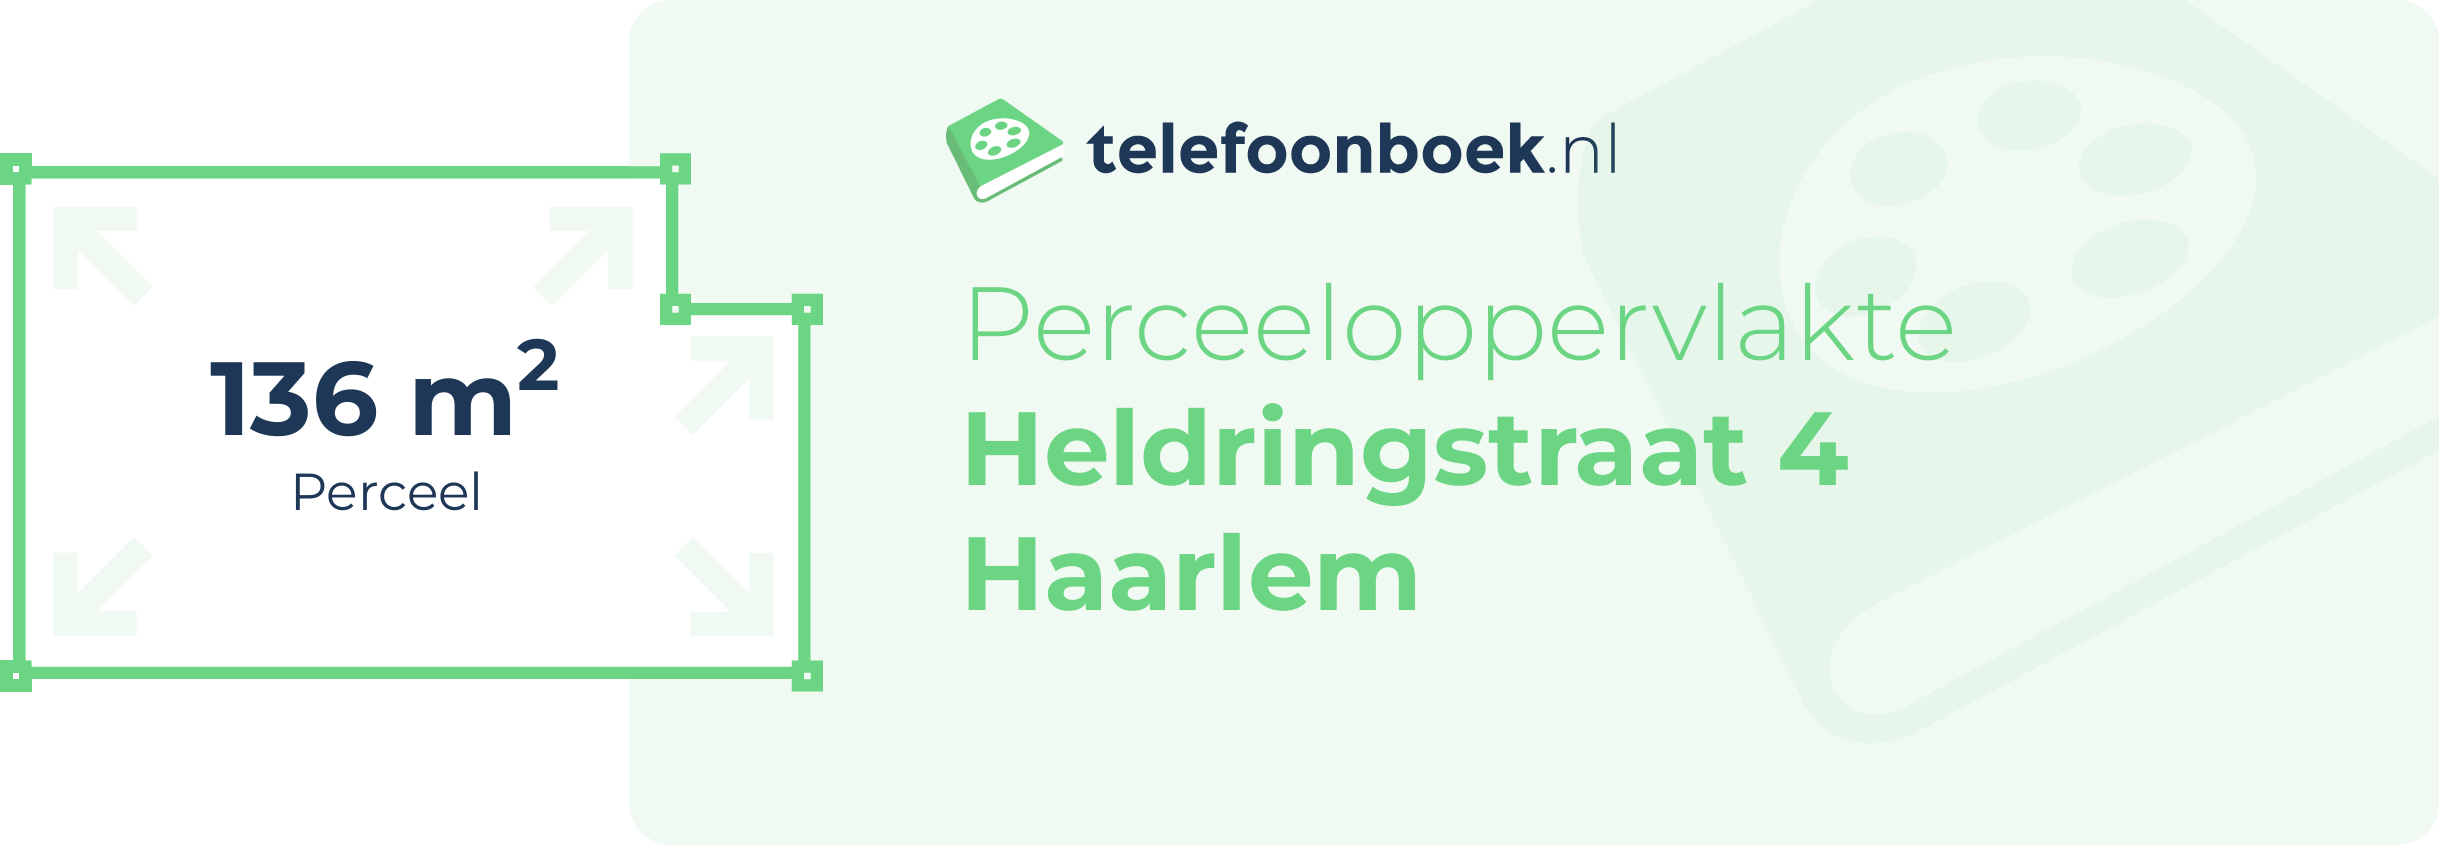 Perceeloppervlakte Heldringstraat 4 Haarlem